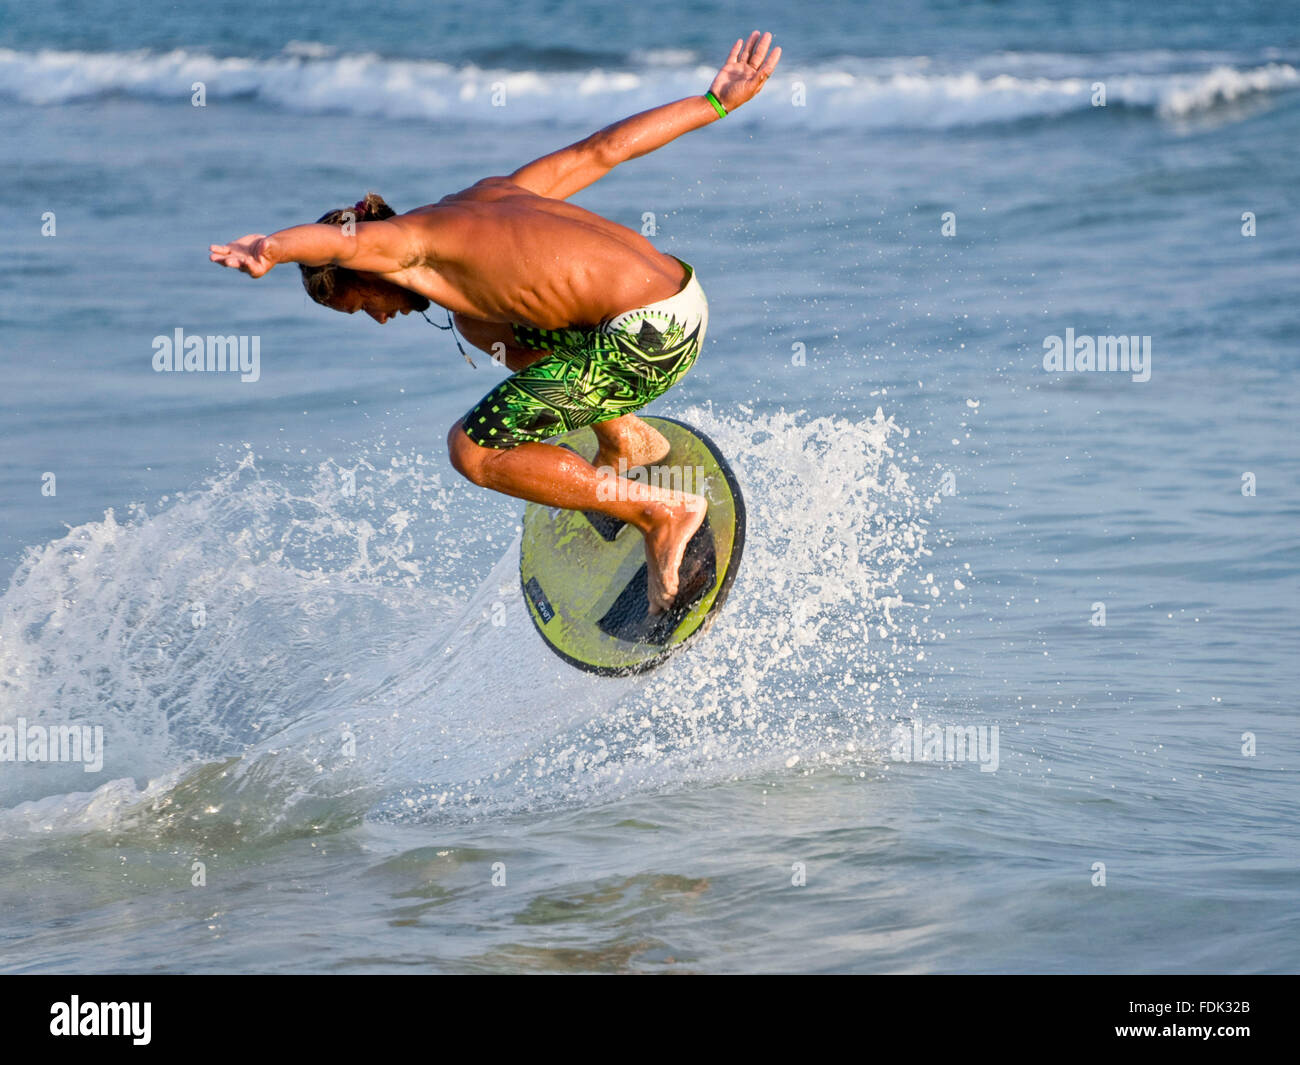 Ein Skimboarder führt einen Trick am Strand von Santa Maria, Insel Sal, Kapverden. Stockfoto